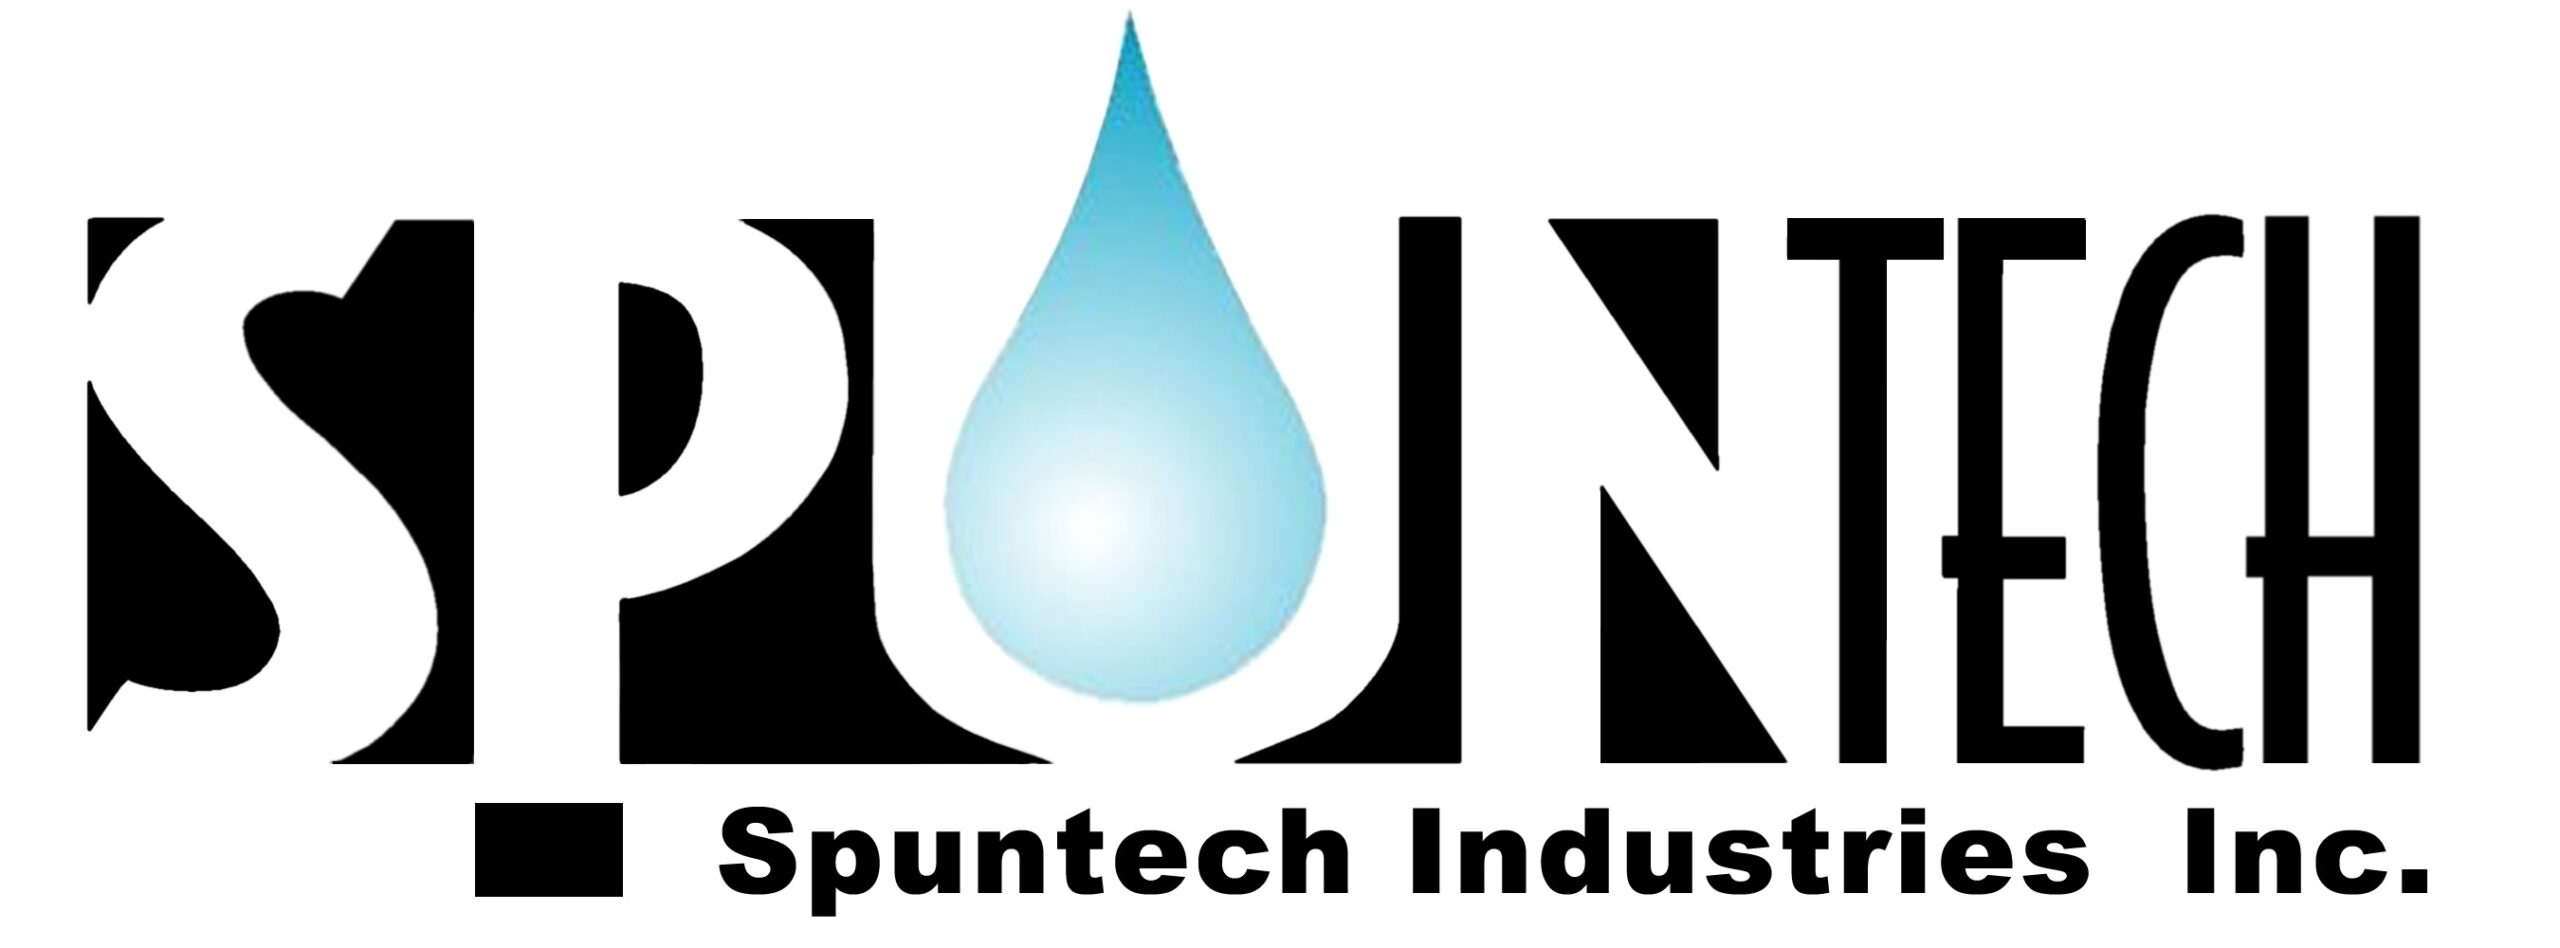 Spuntech Industries logo